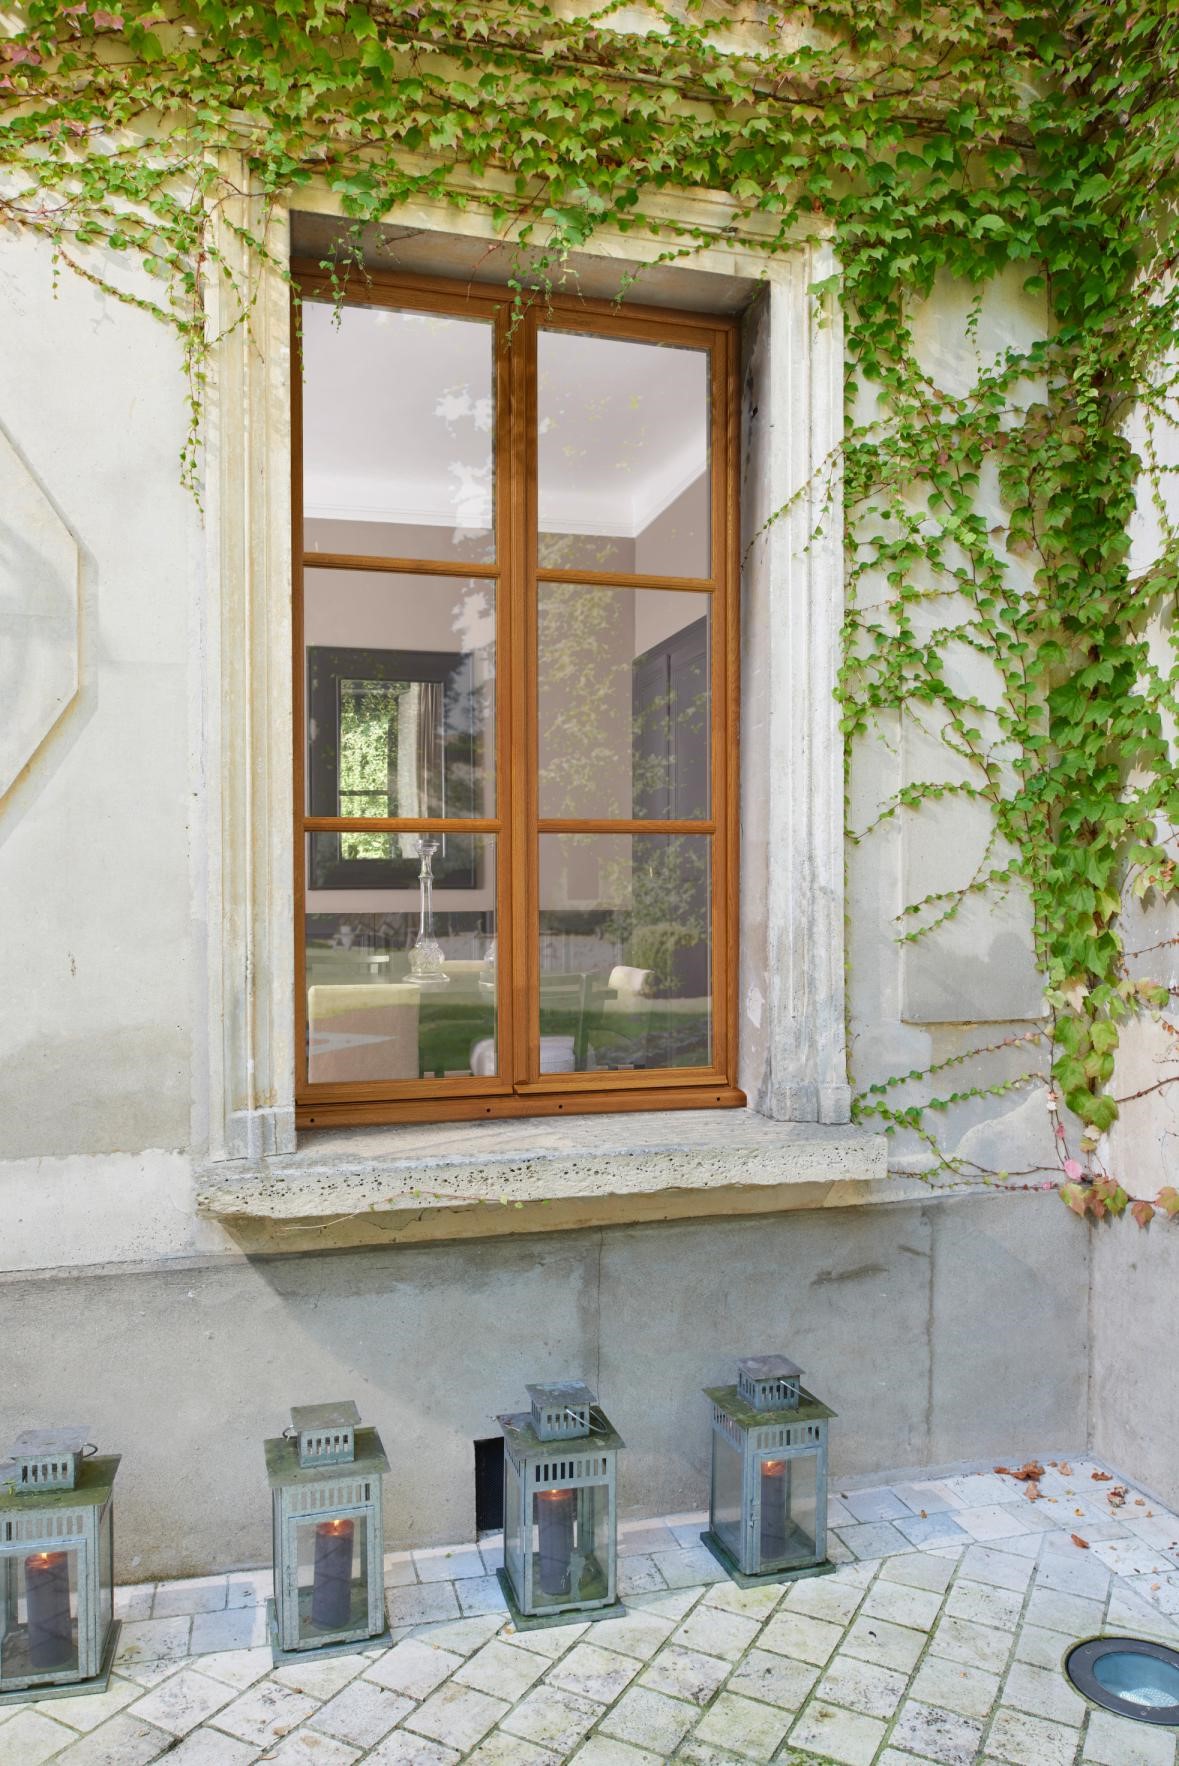 Fenêtre en bois vue de l'extérieur avec de la verdure